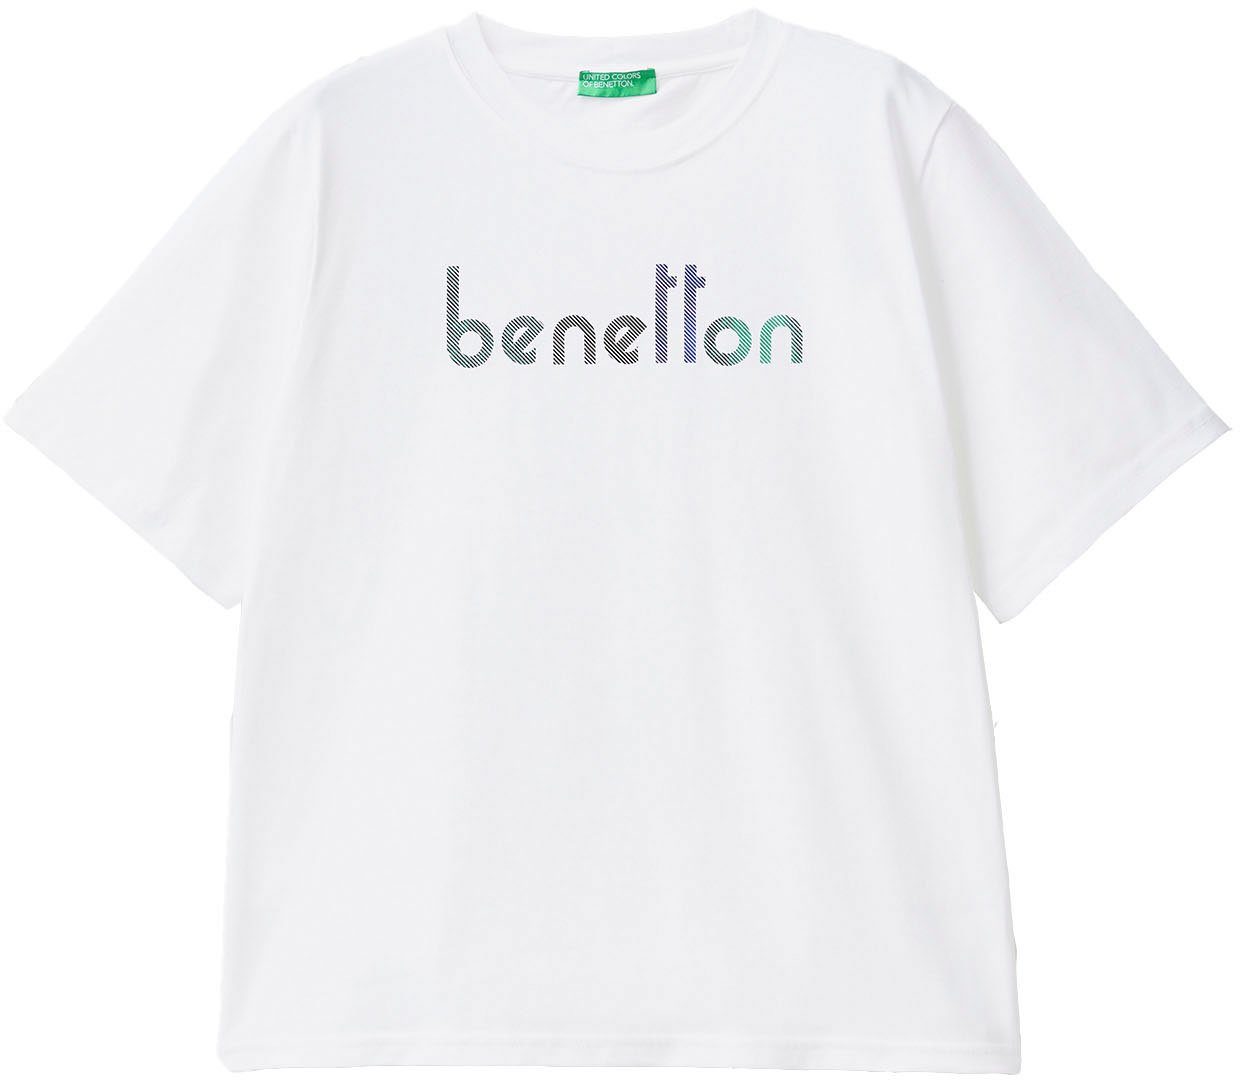 Brust of Logodruck T-Shirt mit Benetton auf der Colors weiß United